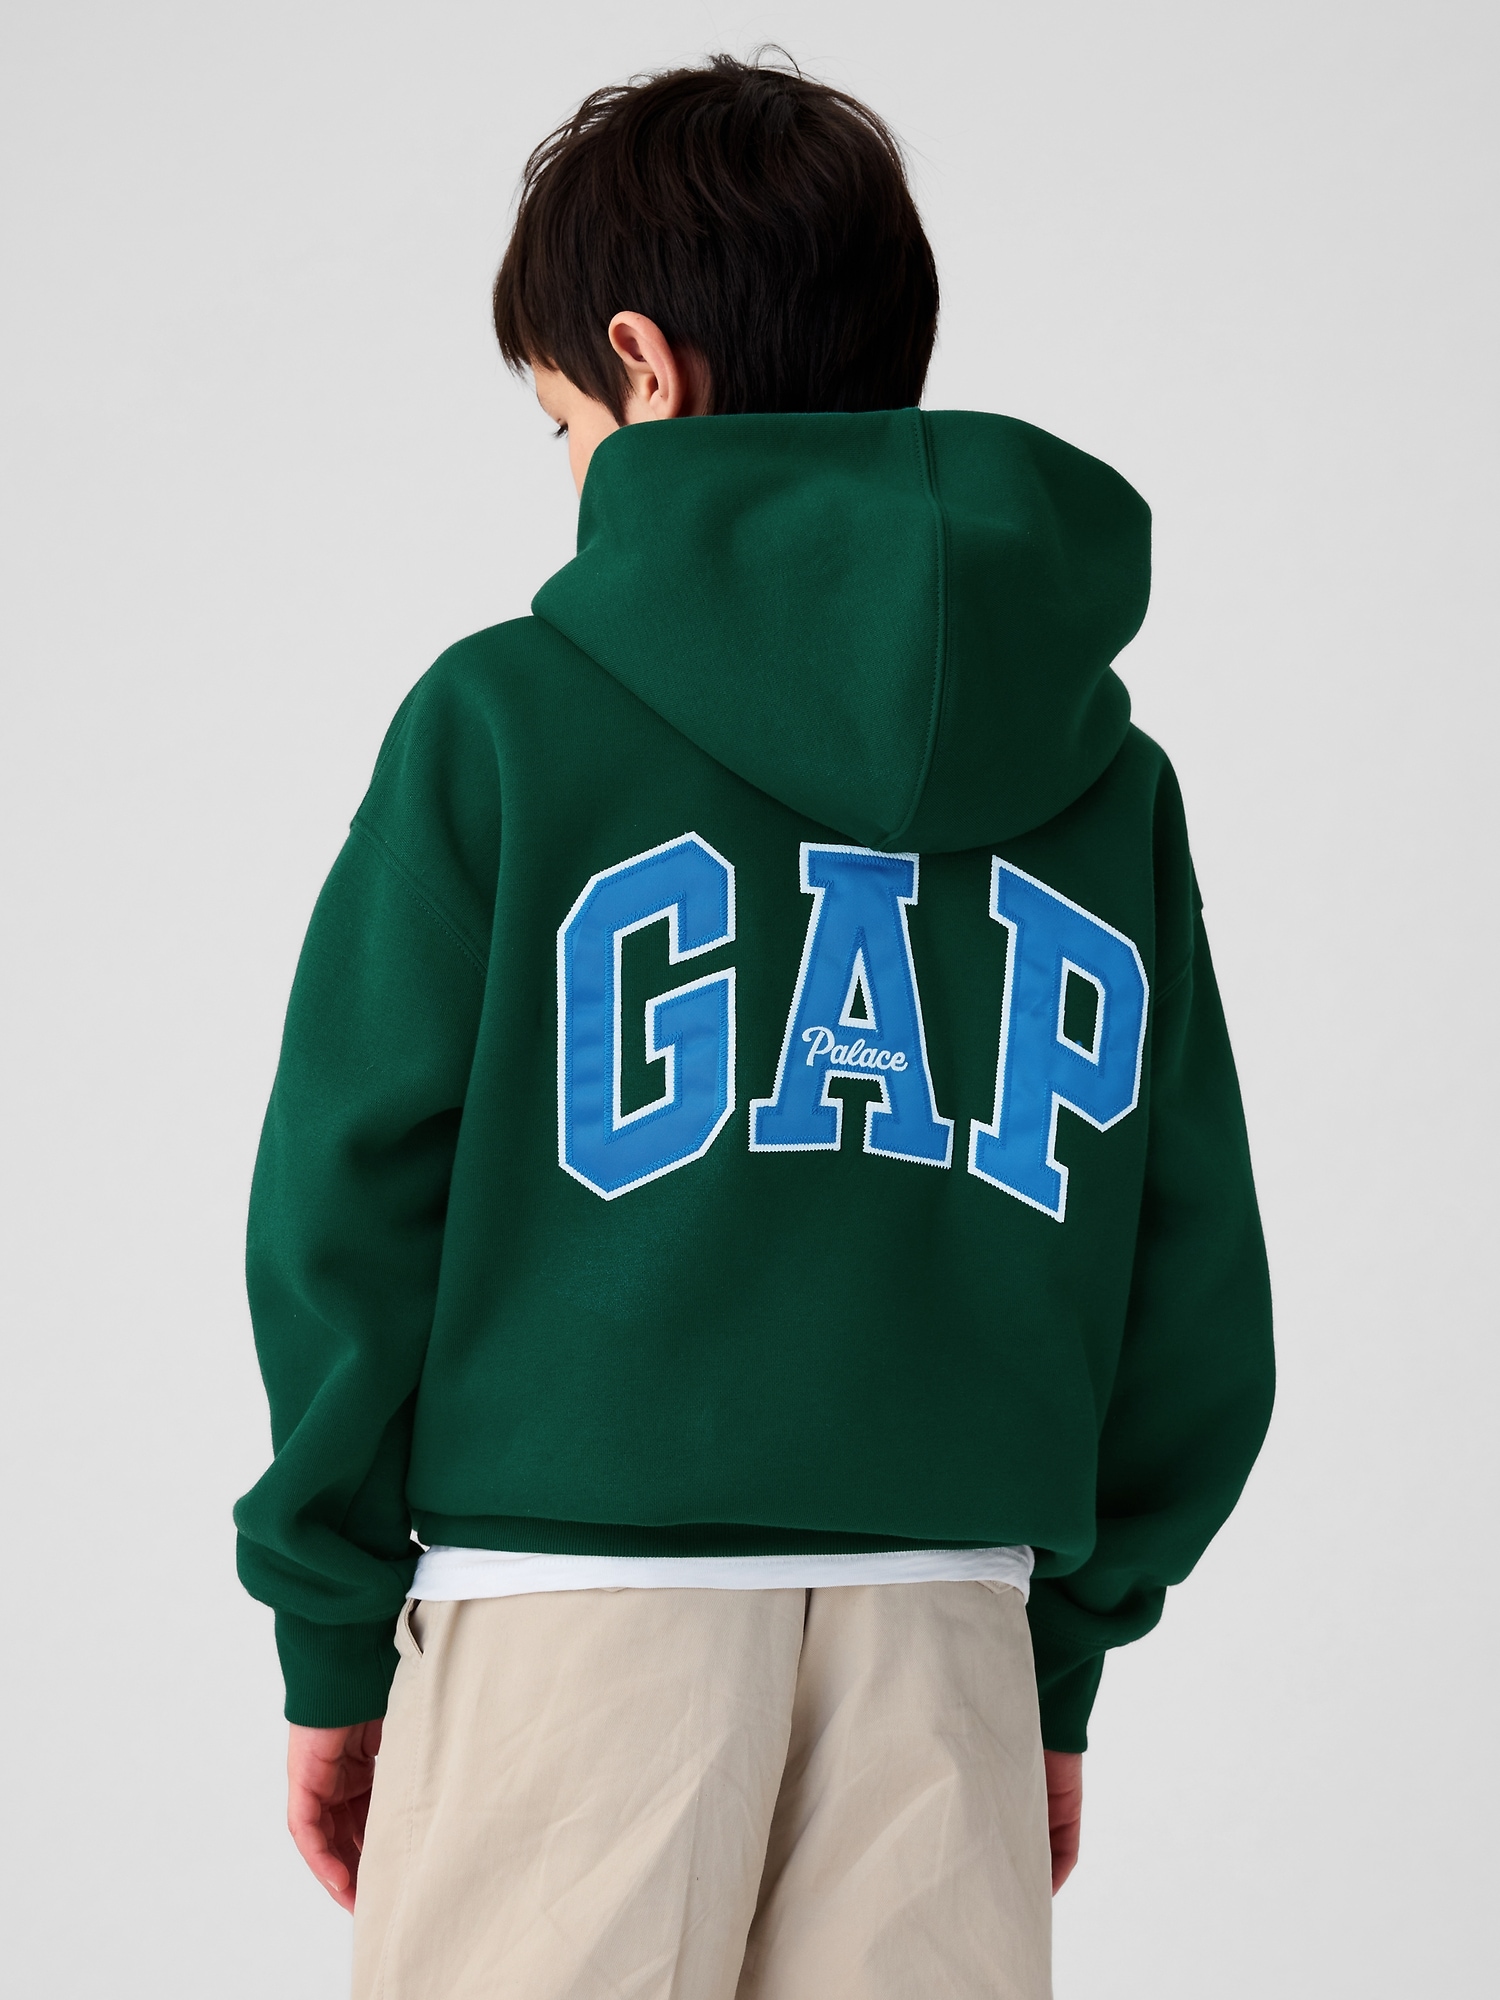 よろしくご検討下さいPALACE x Gap Kids Hood Rain Forest パーカー